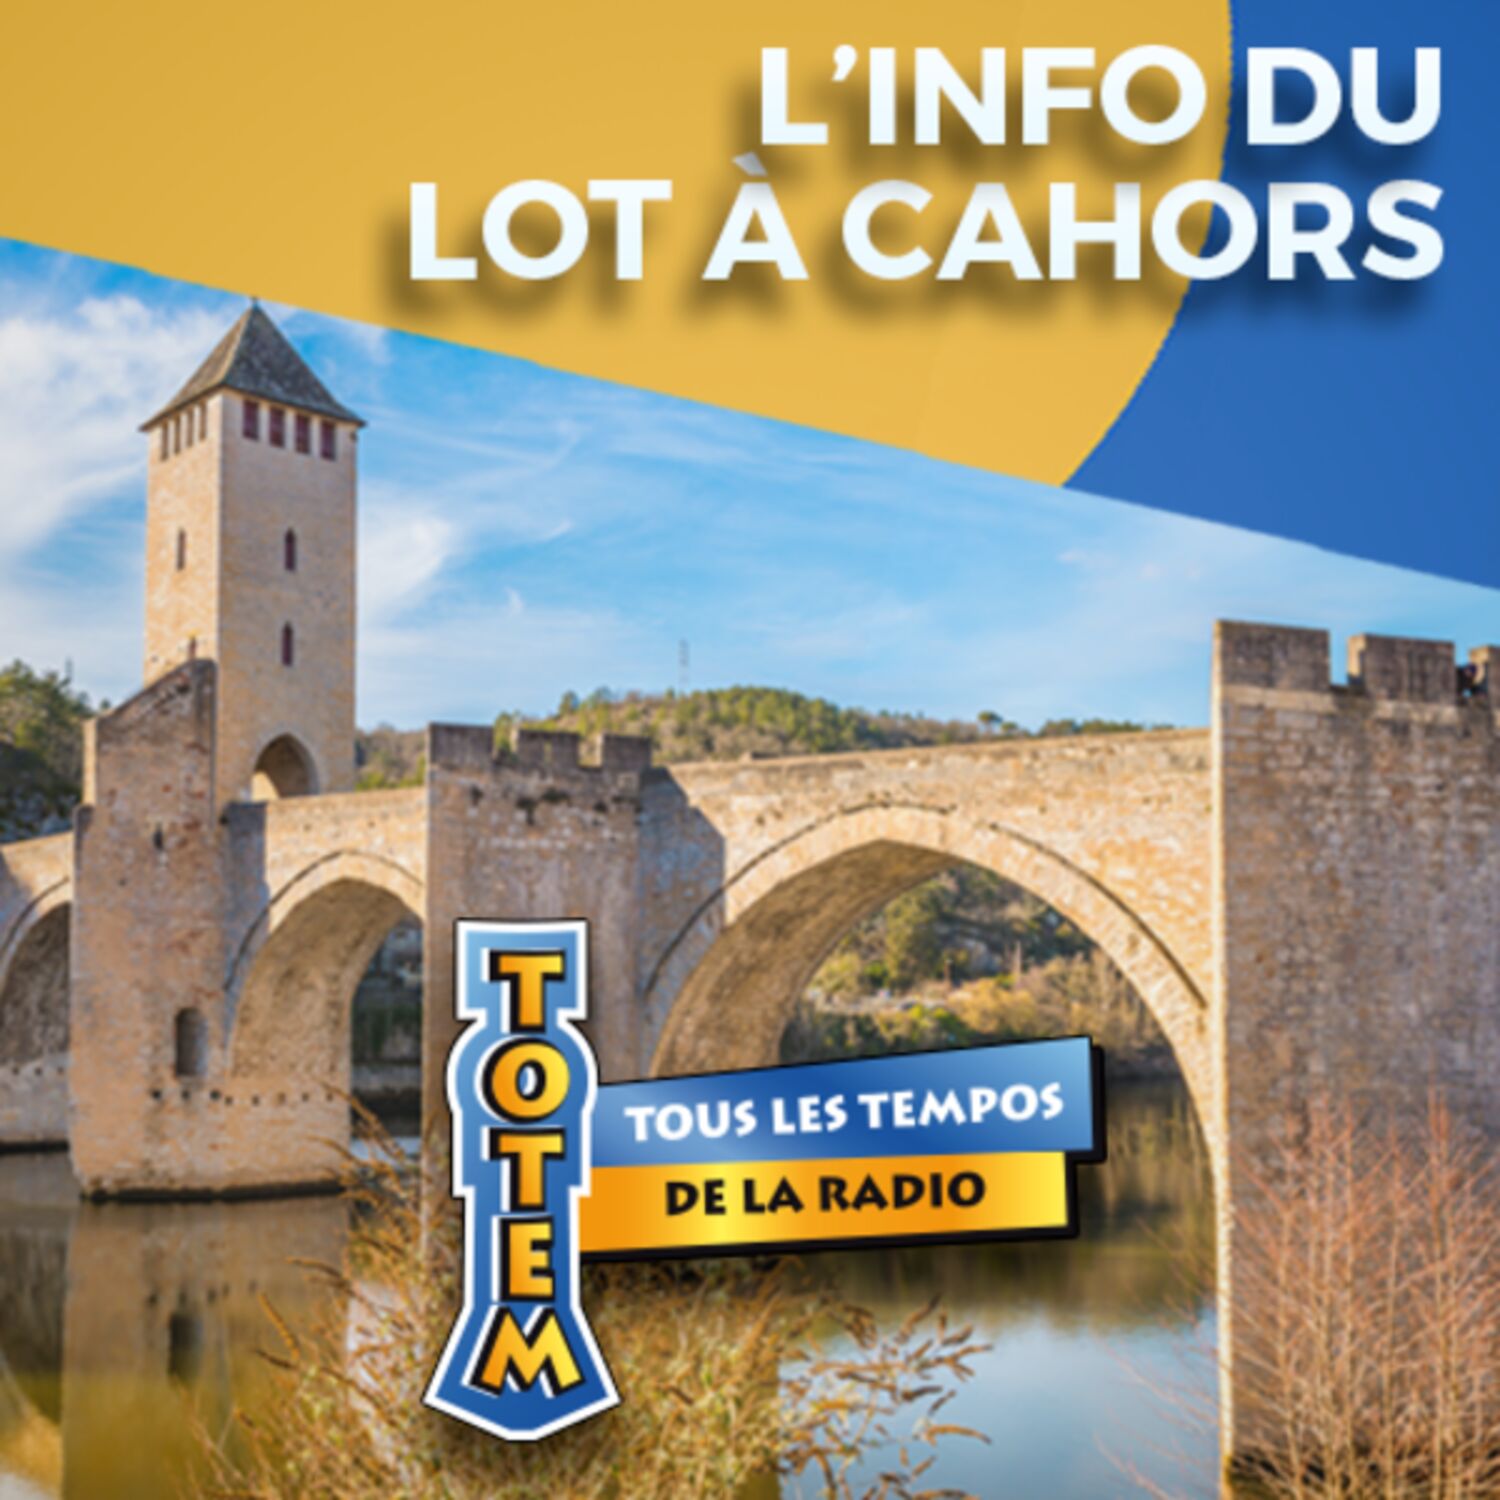 L'info du Lot à Cahors du 01/04/23 à 07h59